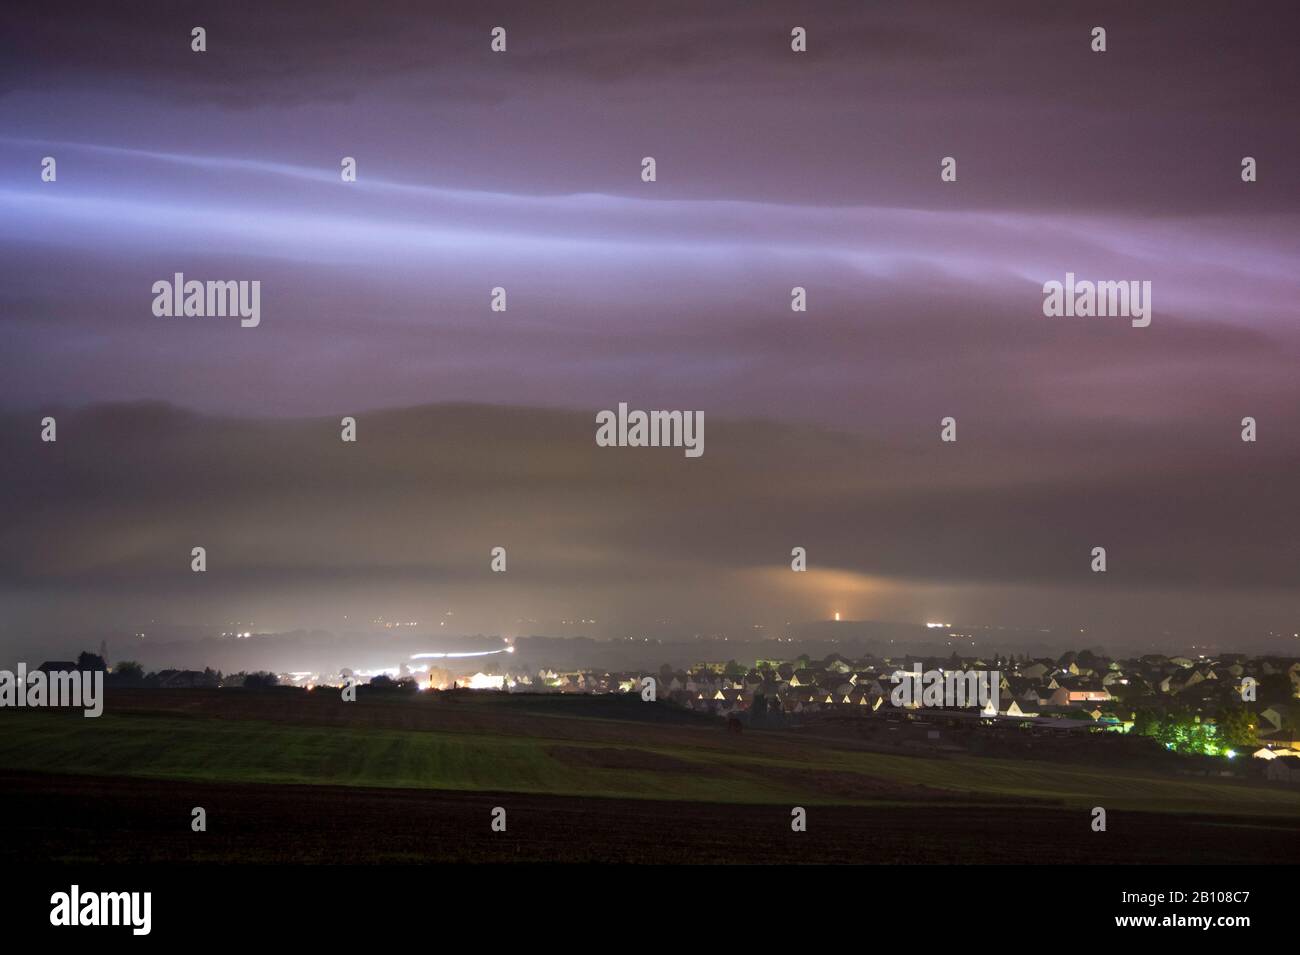 Nuage nocturne d'un orage illuminé par des éclairs de lumière derrière Langgöns, Hessen, Allemagne Banque D'Images